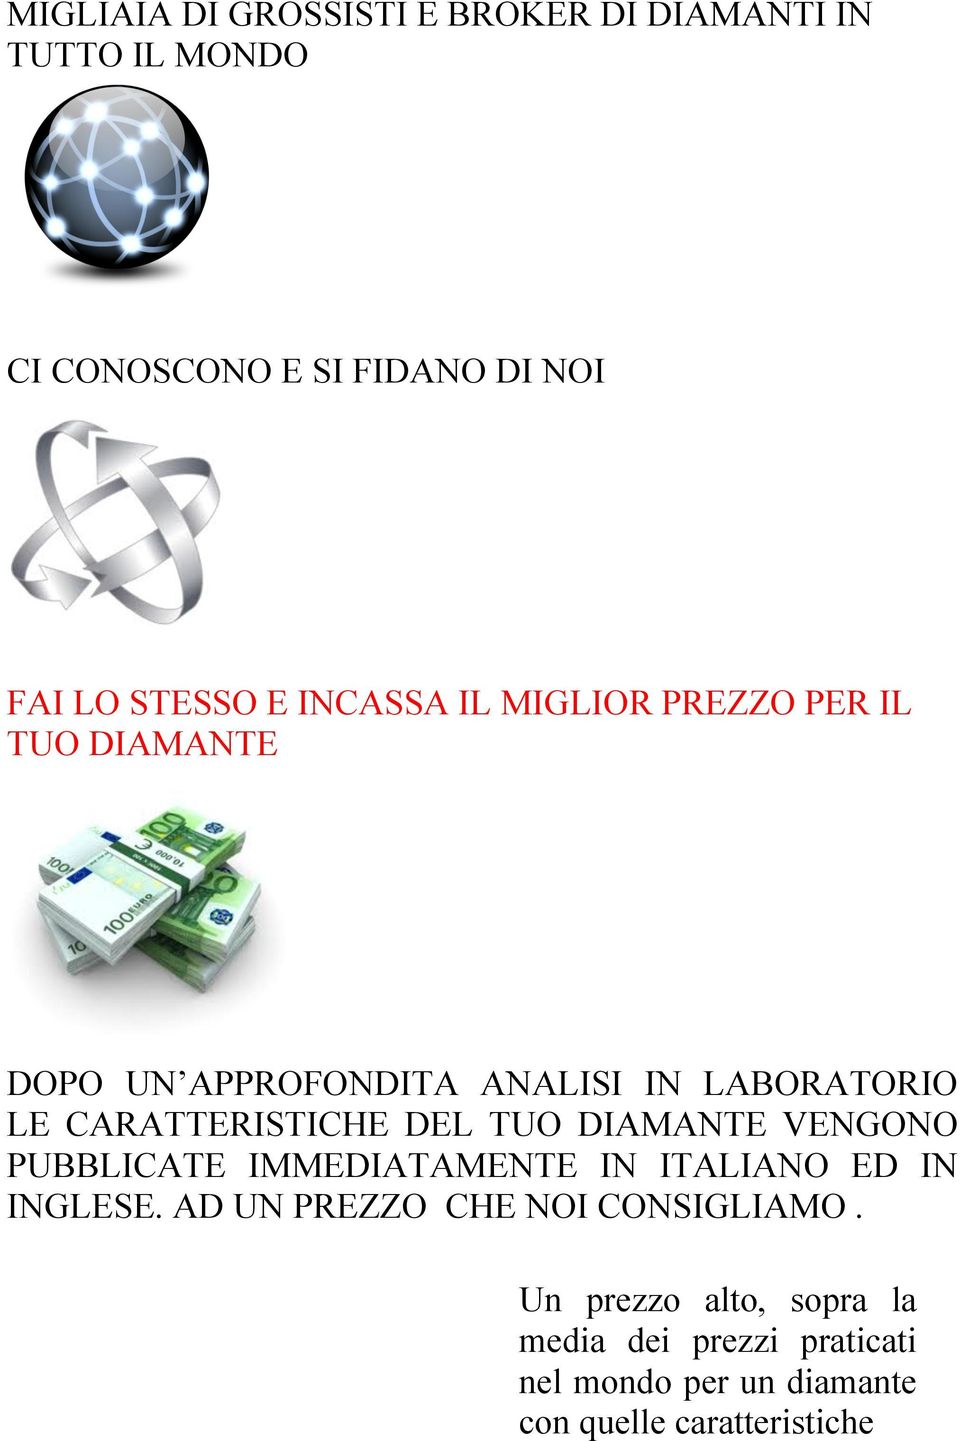 DEL TUO DIAMANTE VENGONO PUBBLICATE IMMEDIATAMENTE IN ITALIANO ED IN INGLESE.